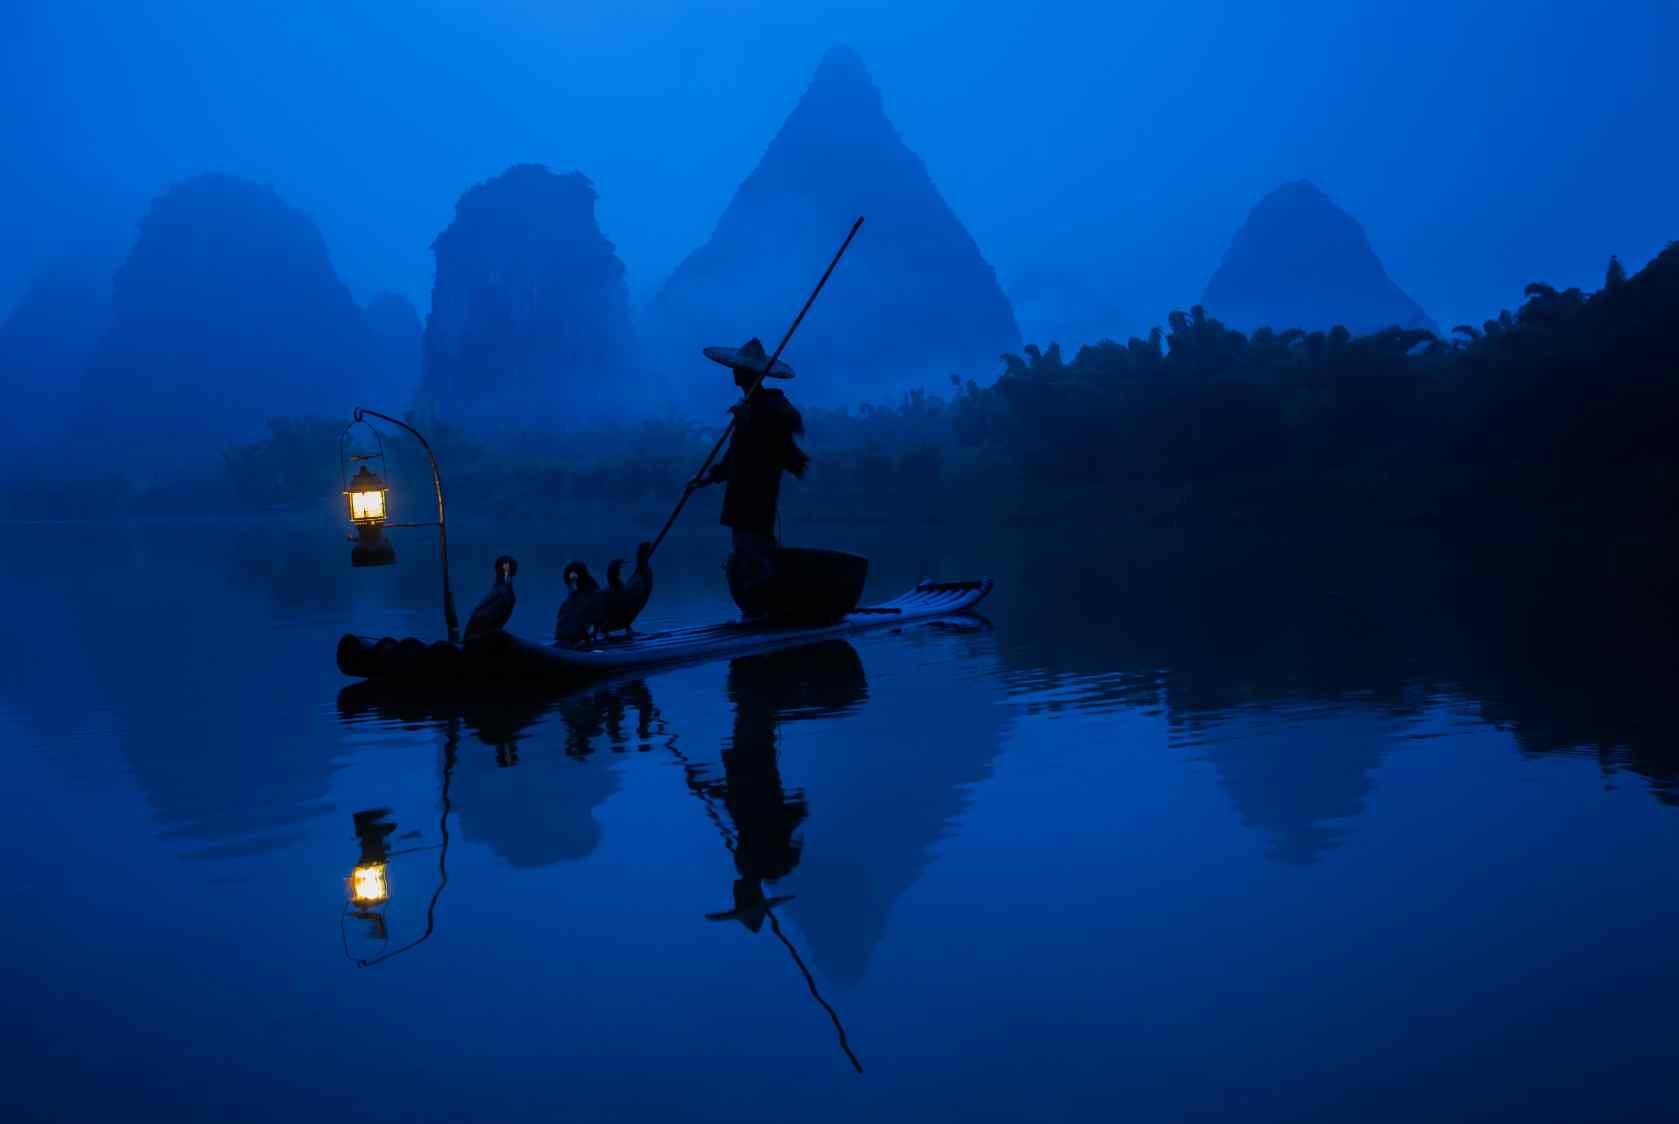 桂林漓江夜景风景壁纸